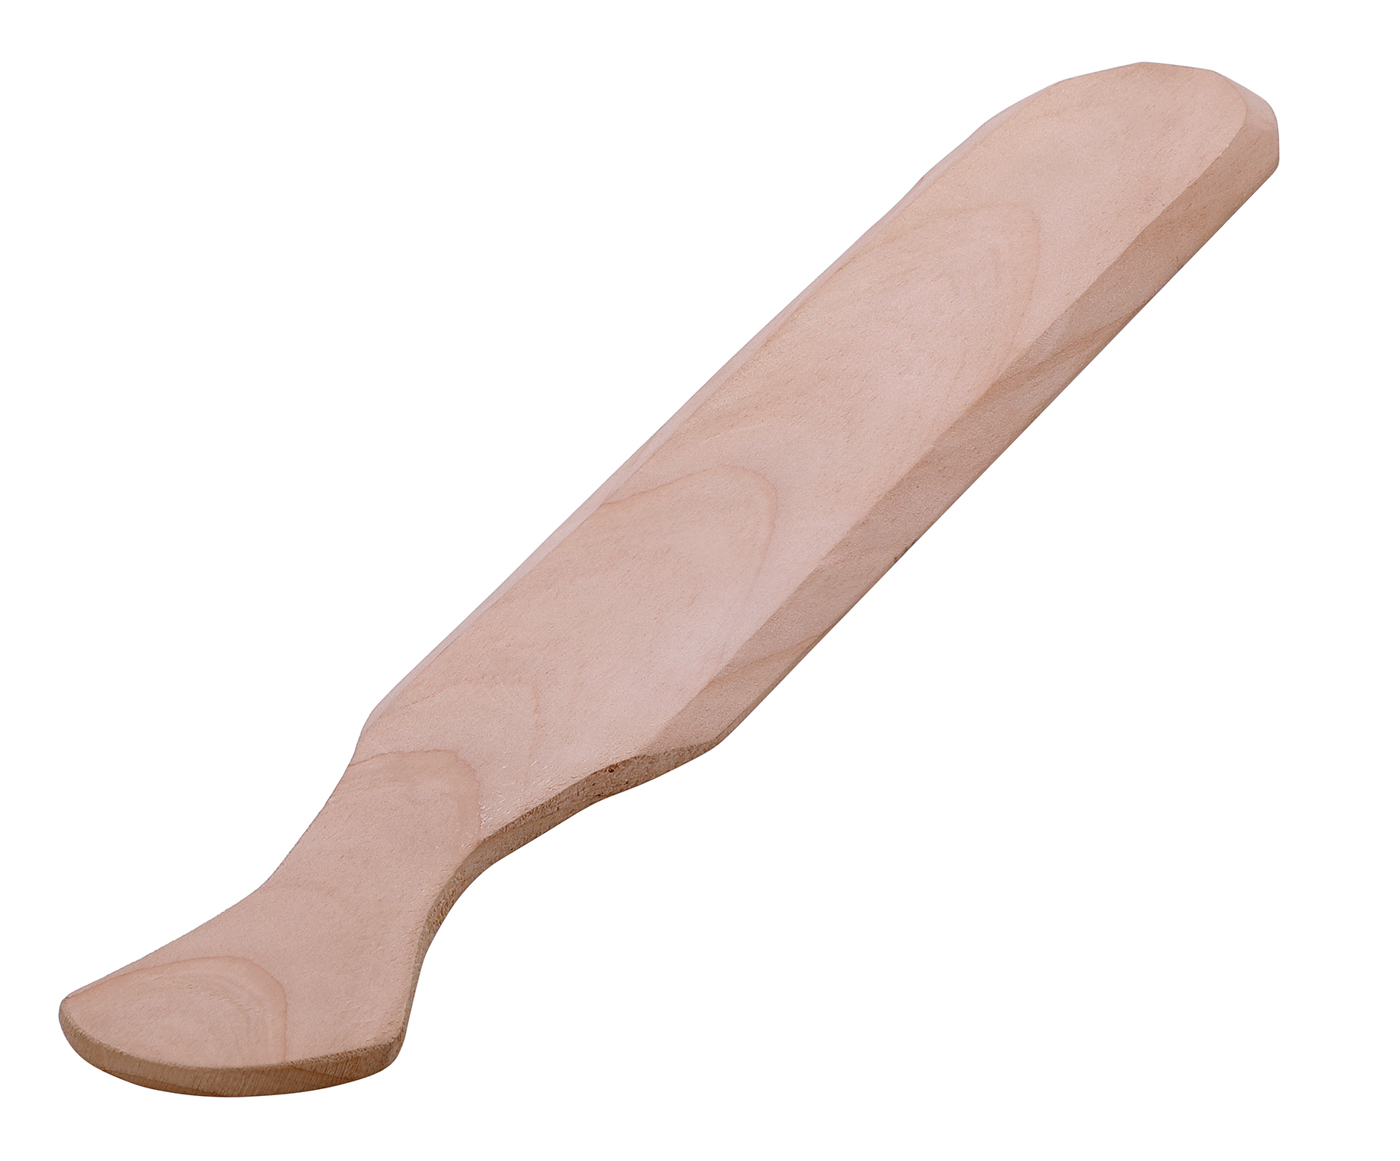 Bartscher Teigwendemesser C100 | Material: Holz | Maße: 5,5 x 43 x 10 cm. Gewicht: 0,048 kg